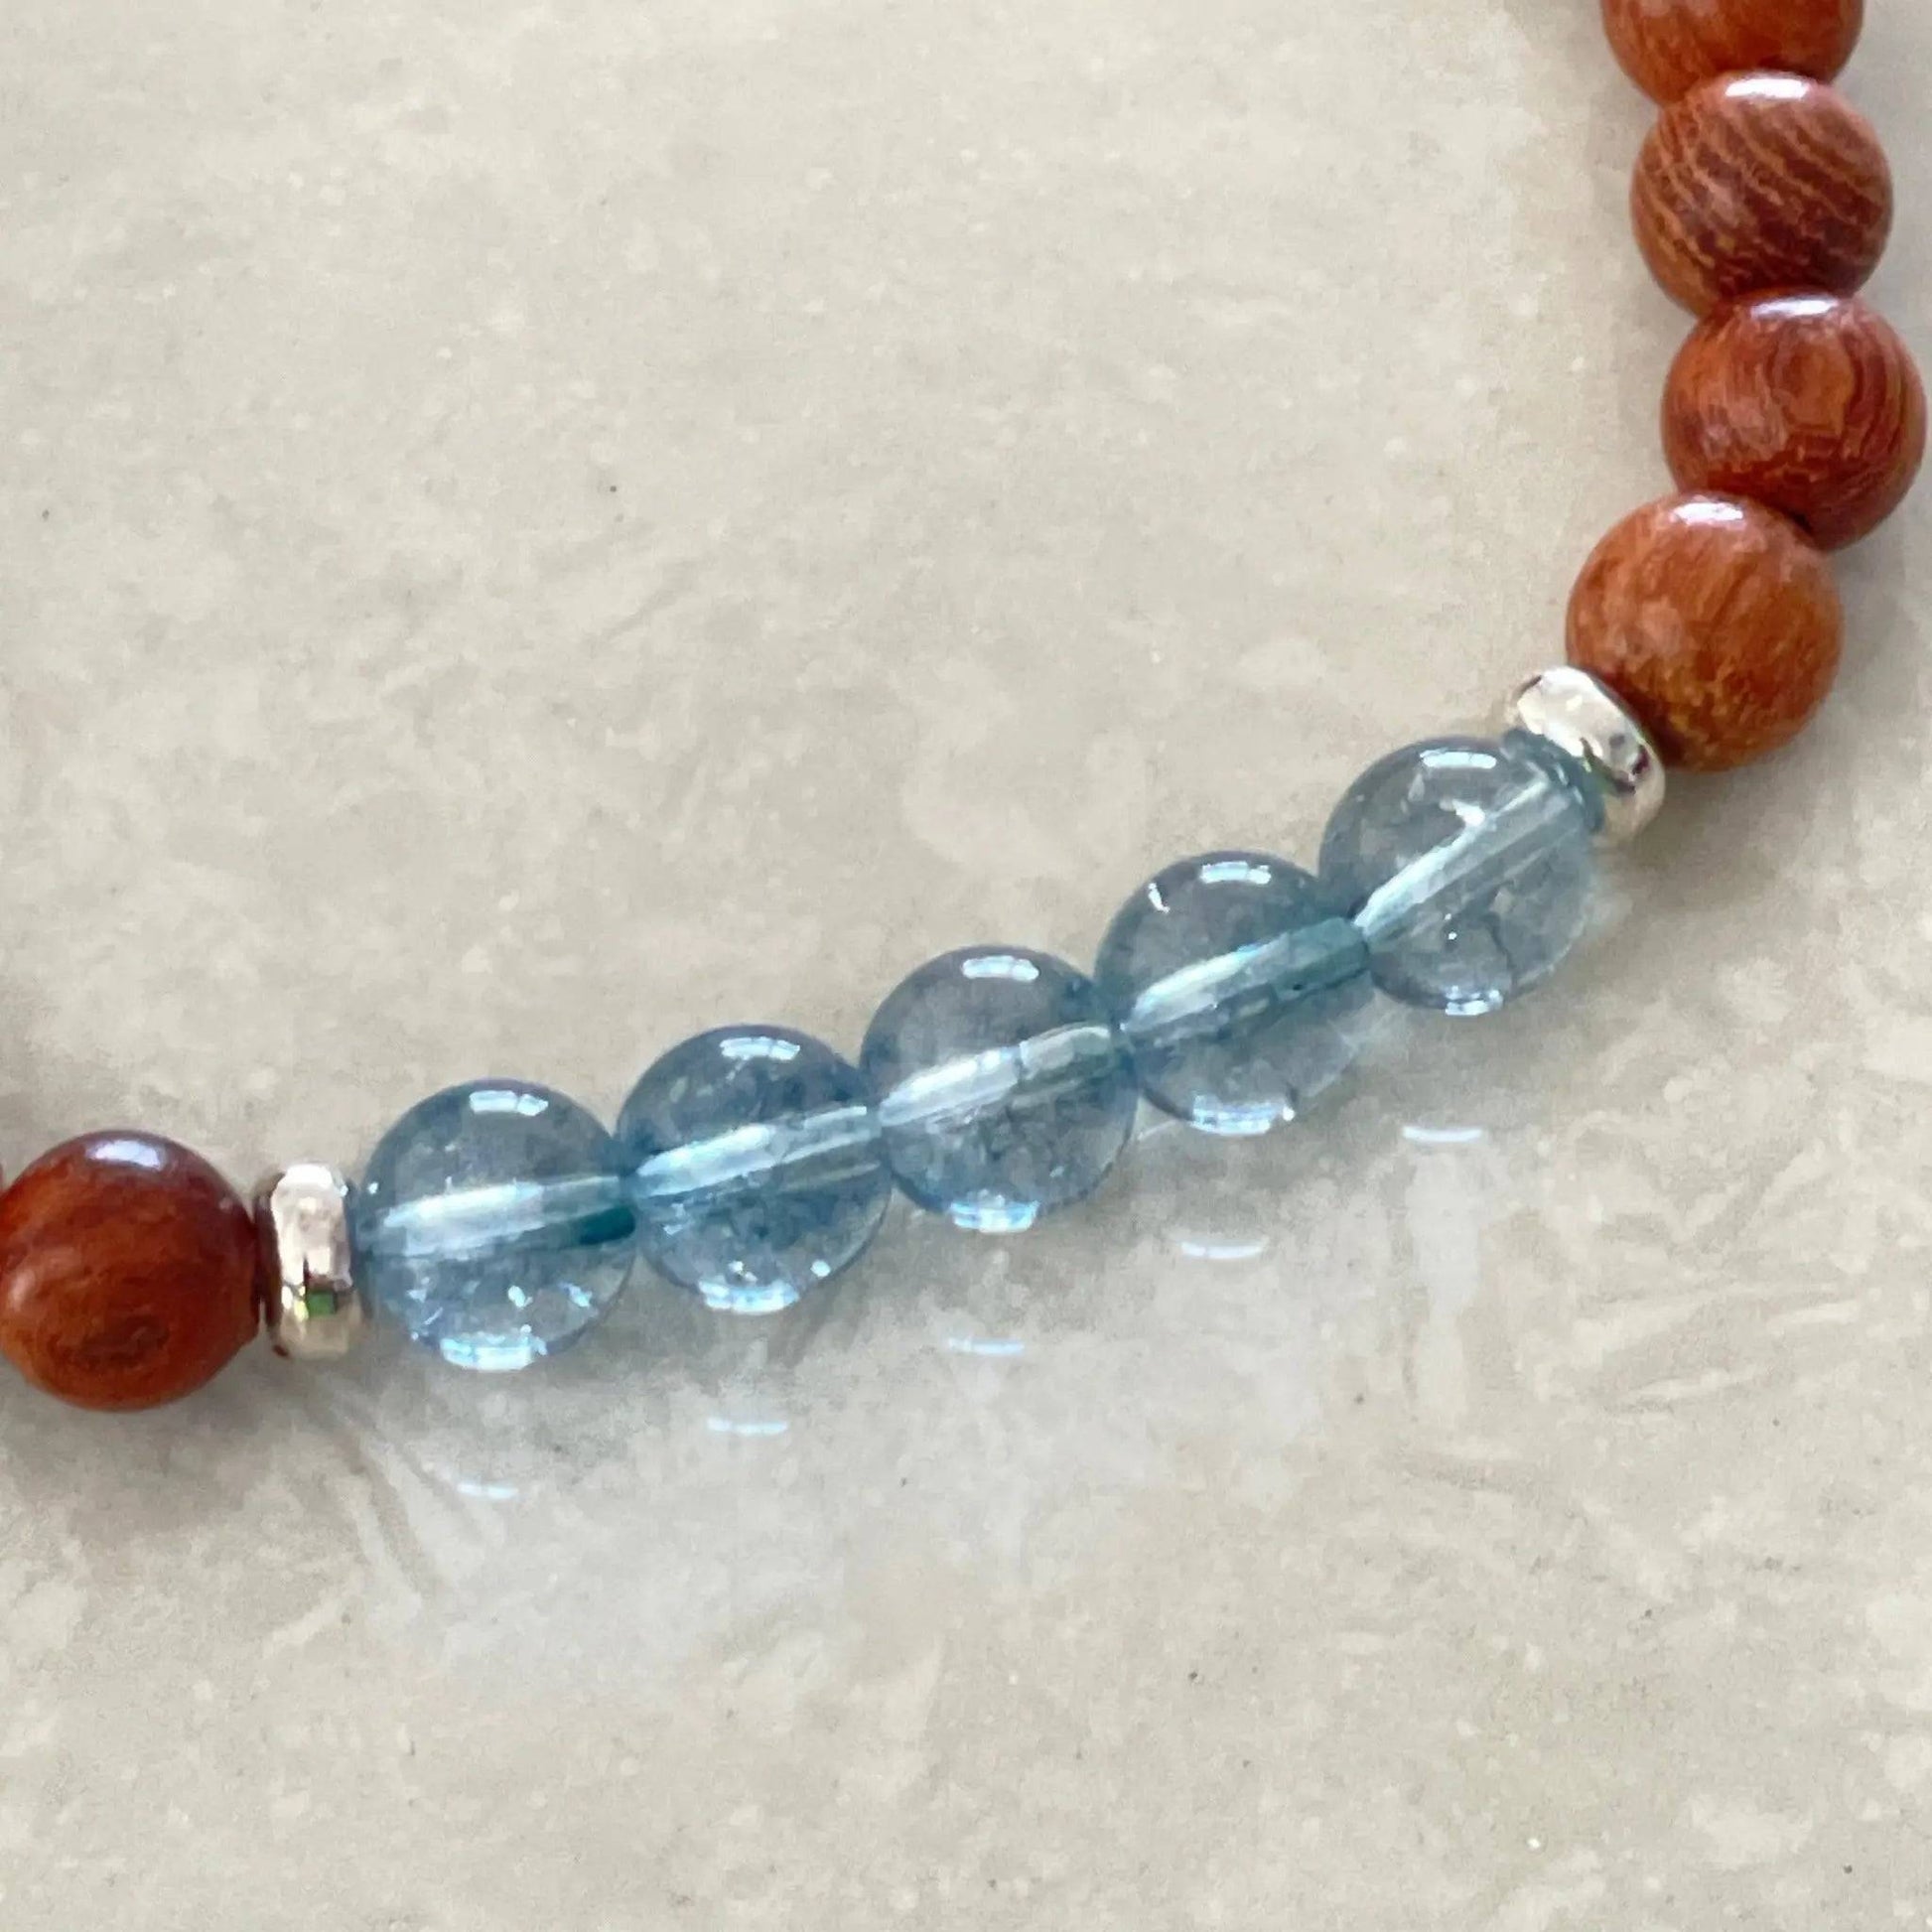 December Birthstone Bracelet - Uplift Beads